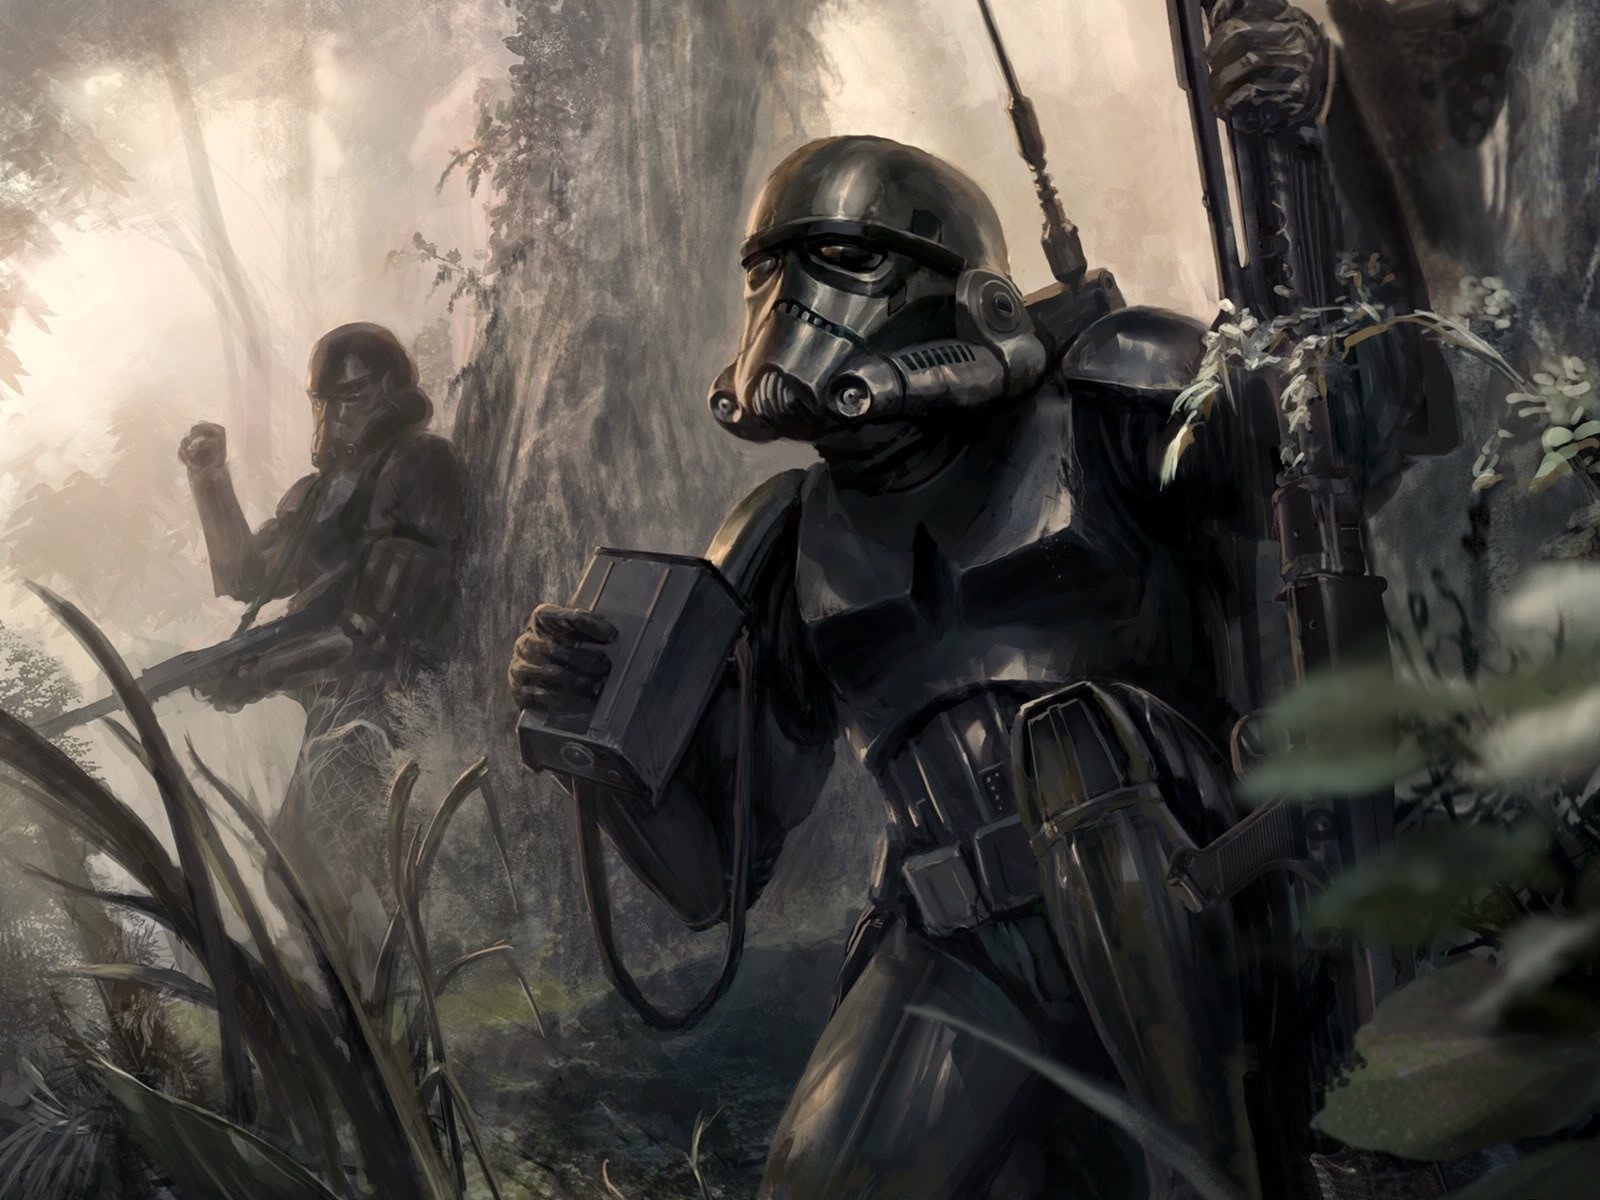 HD wallpaper: photo of Star Wars clone trooper digital wallpaper,  Stormtrooper | Wallpaper Flare